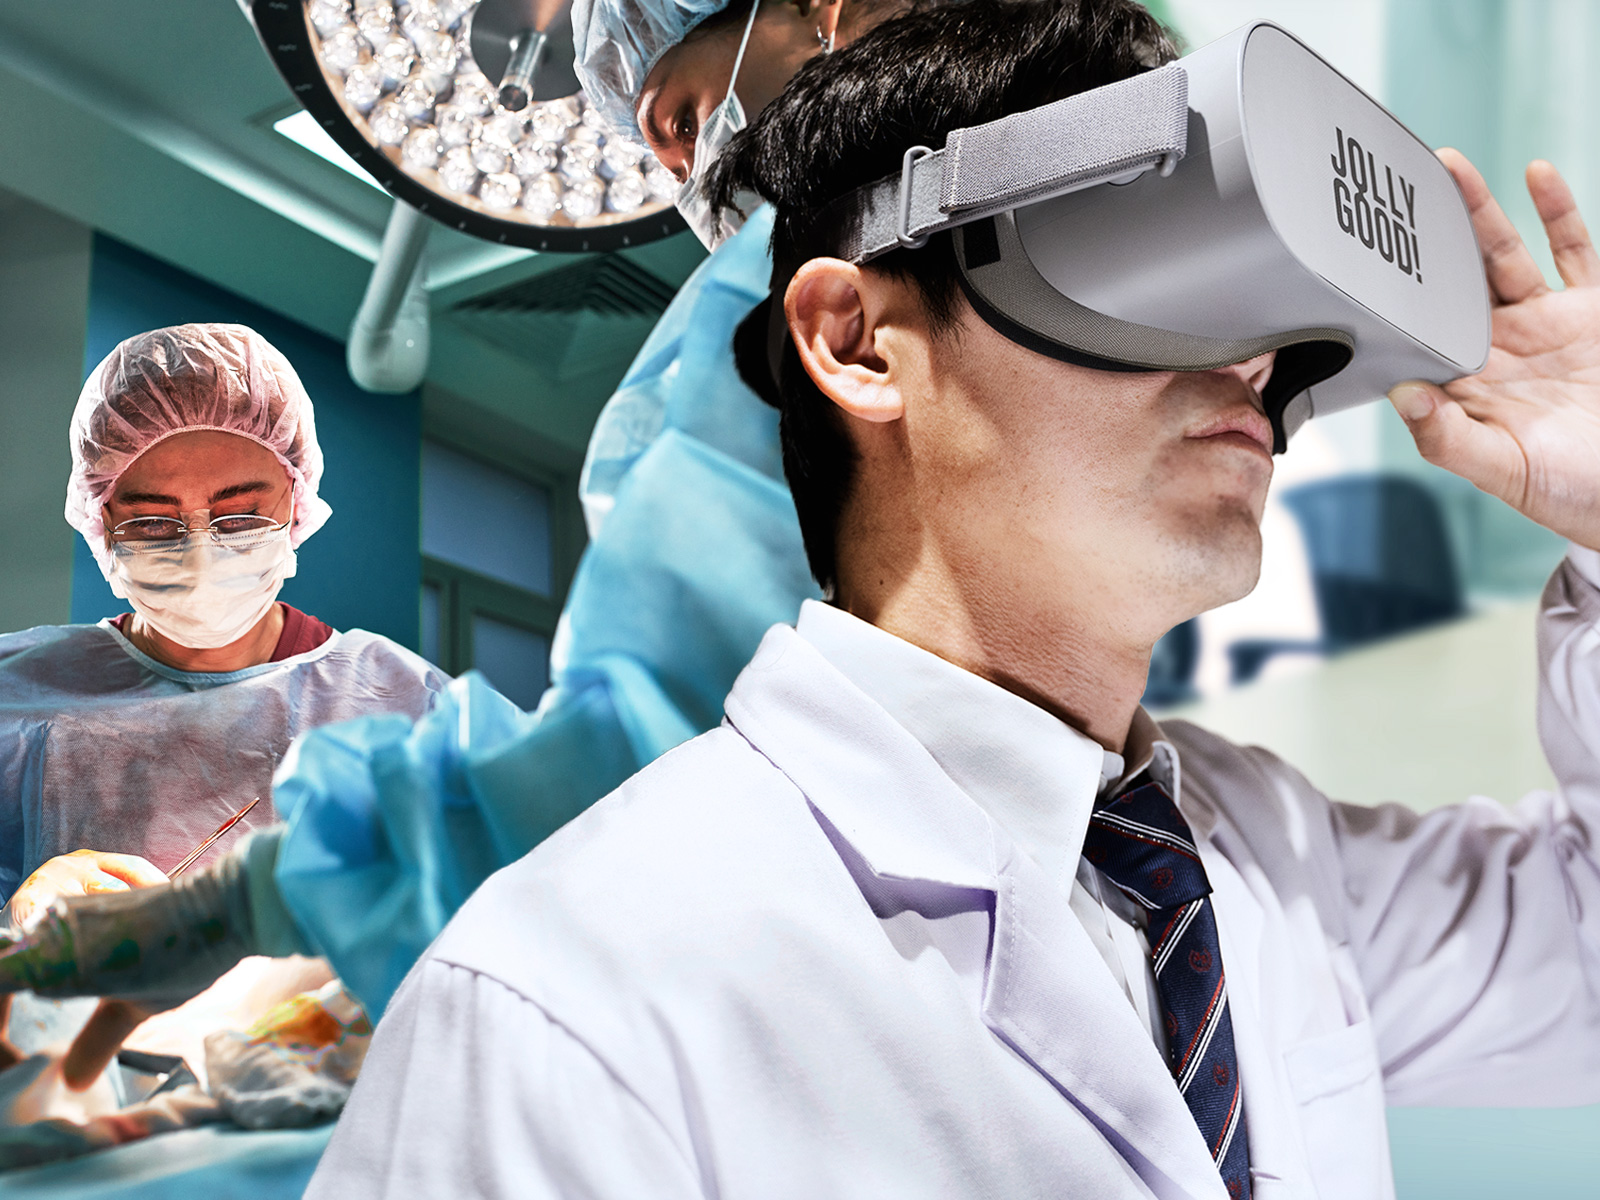 日本経済新聞に、ジョリーグッドが企業向け医療教育VRとして掲載されました。